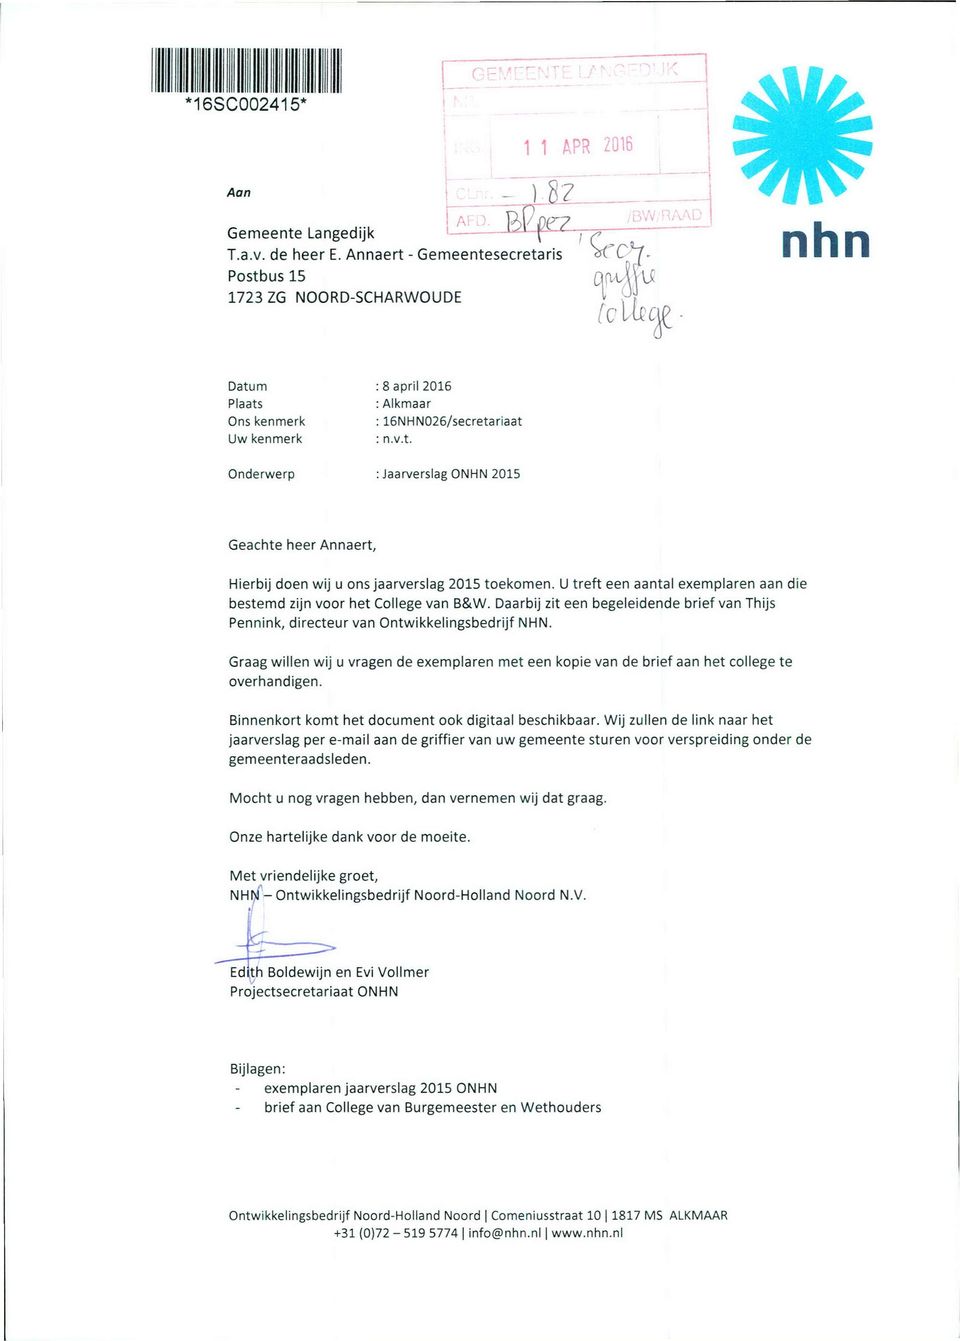 U treft een aantal exemplaren aan die bestemd zijn voor het College van B&W. Daarbij zit een begeleidende brief van Thijs Pennink, directeur van ntwikkelingsbedrijf NHN.